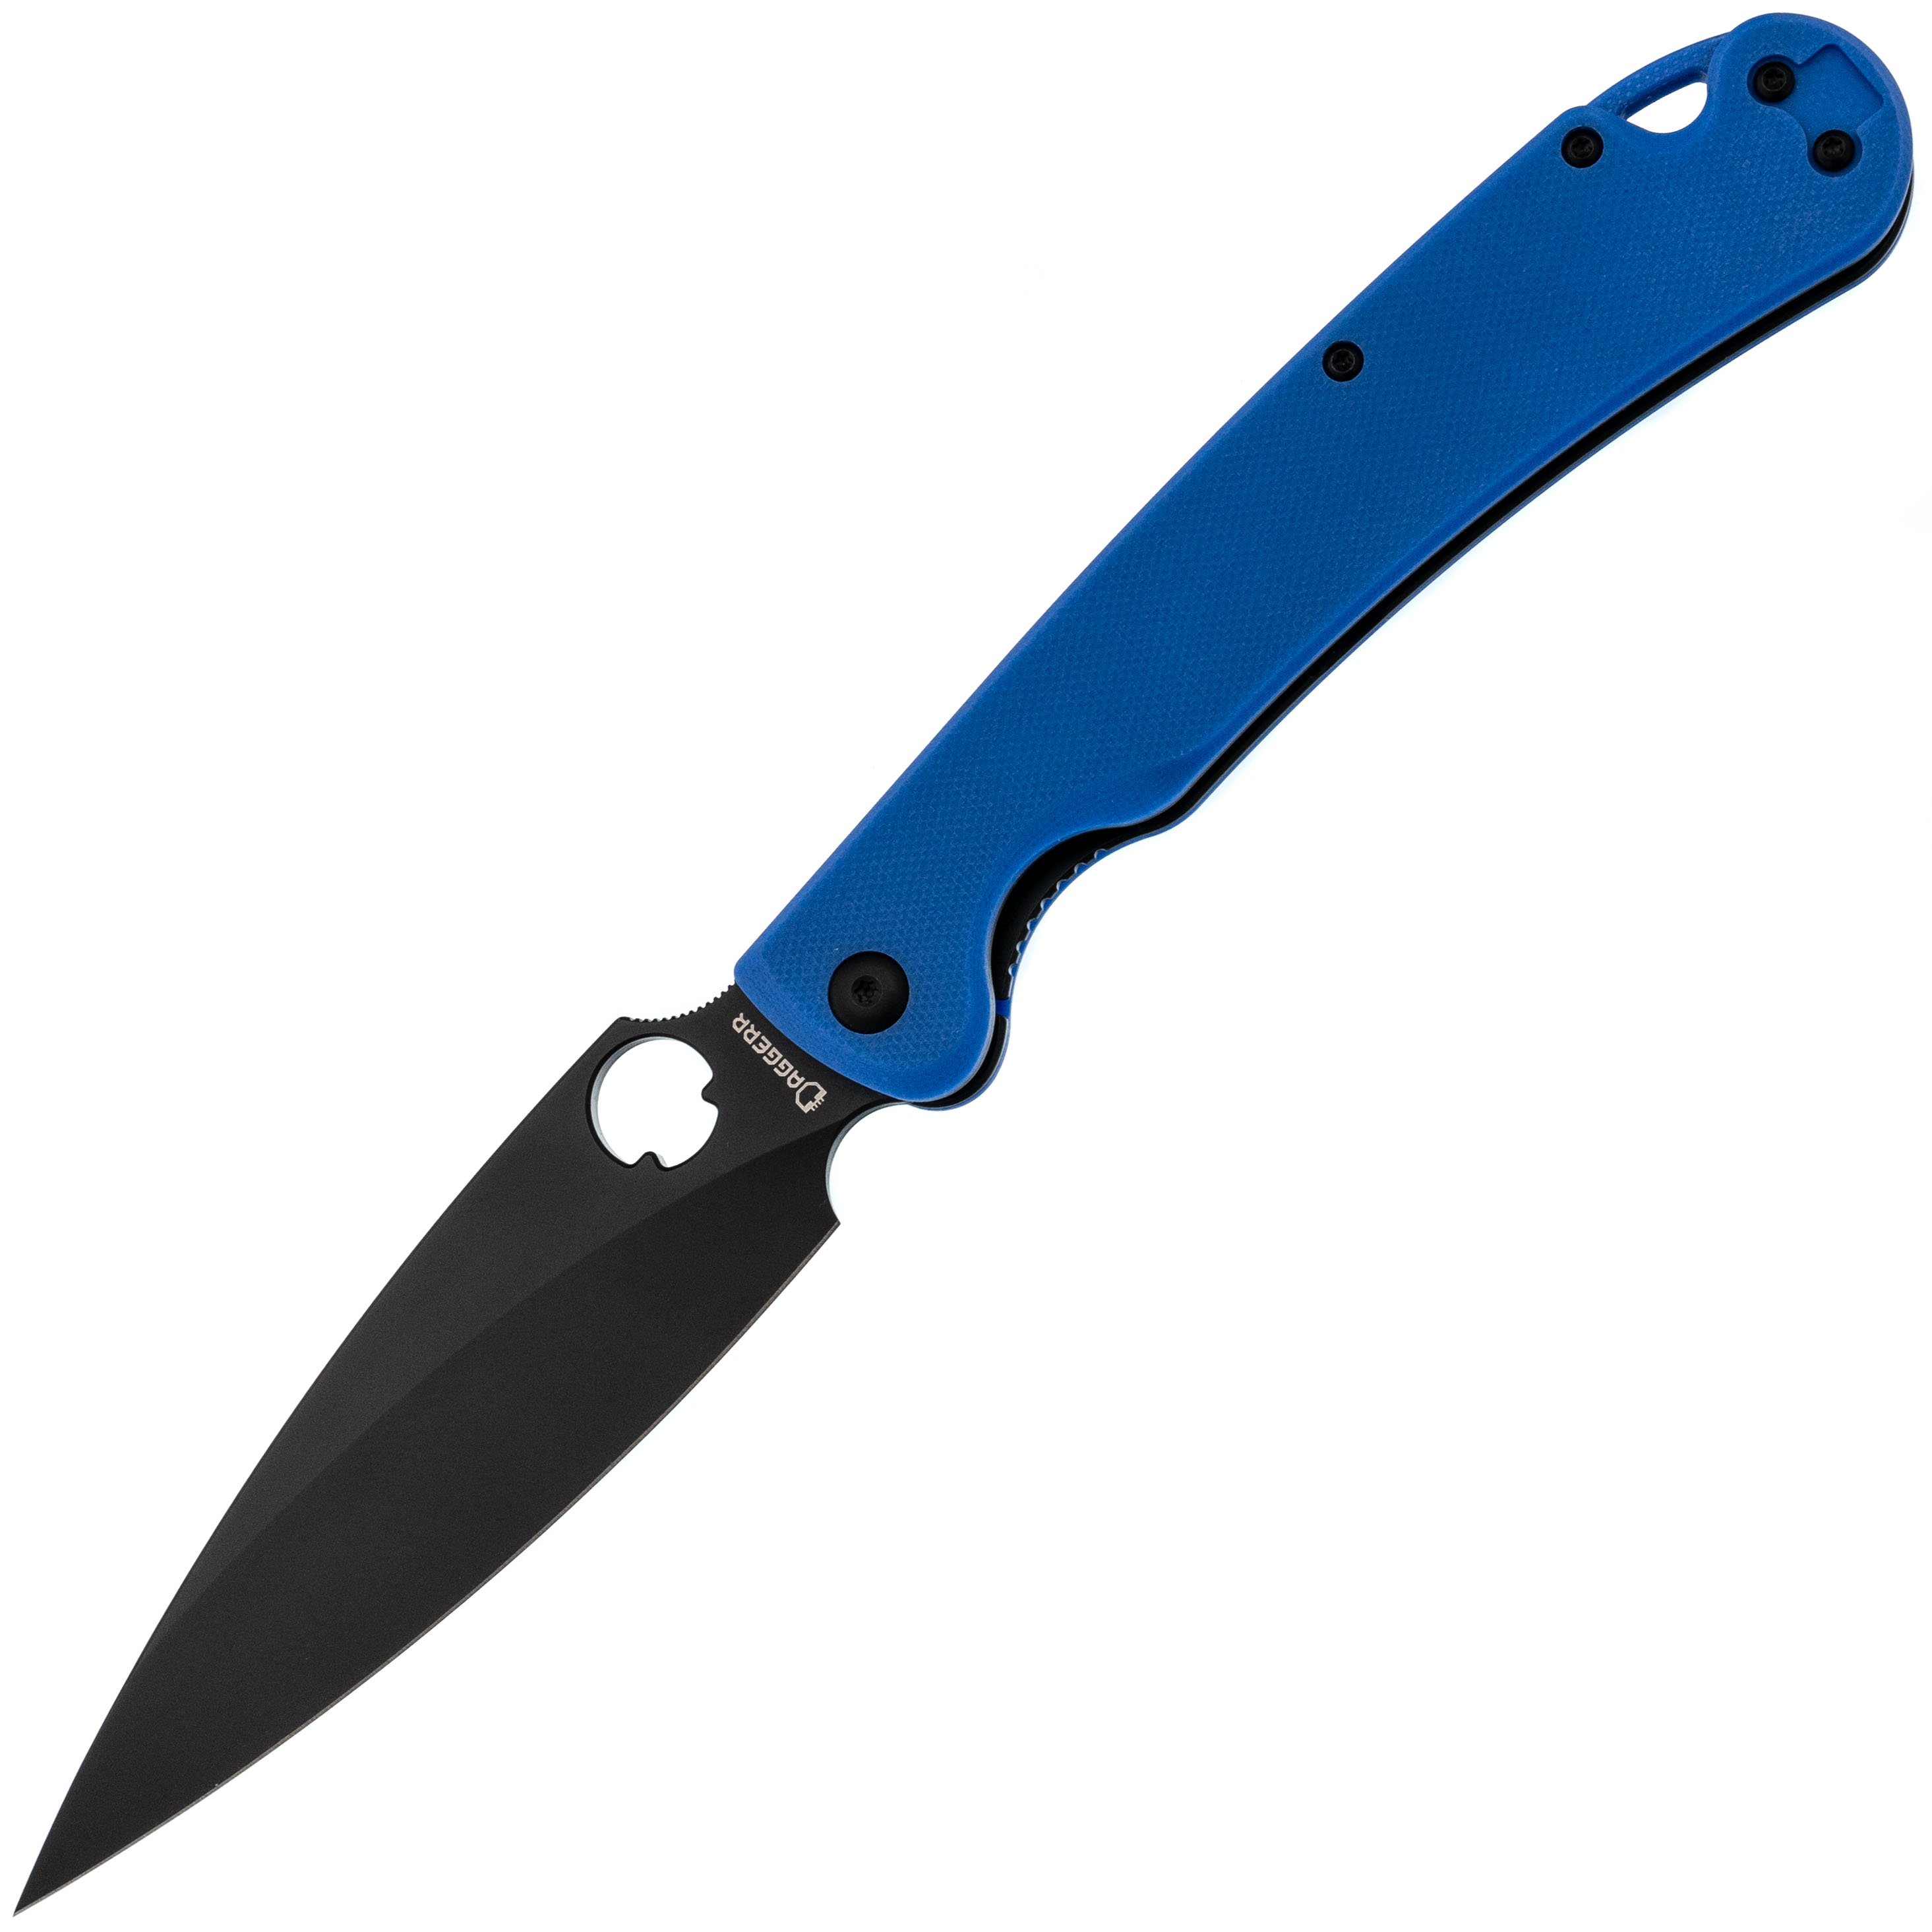 Складной нож Daggerr Sting XL Blue BW DLC, сталь D2, рукоять G10